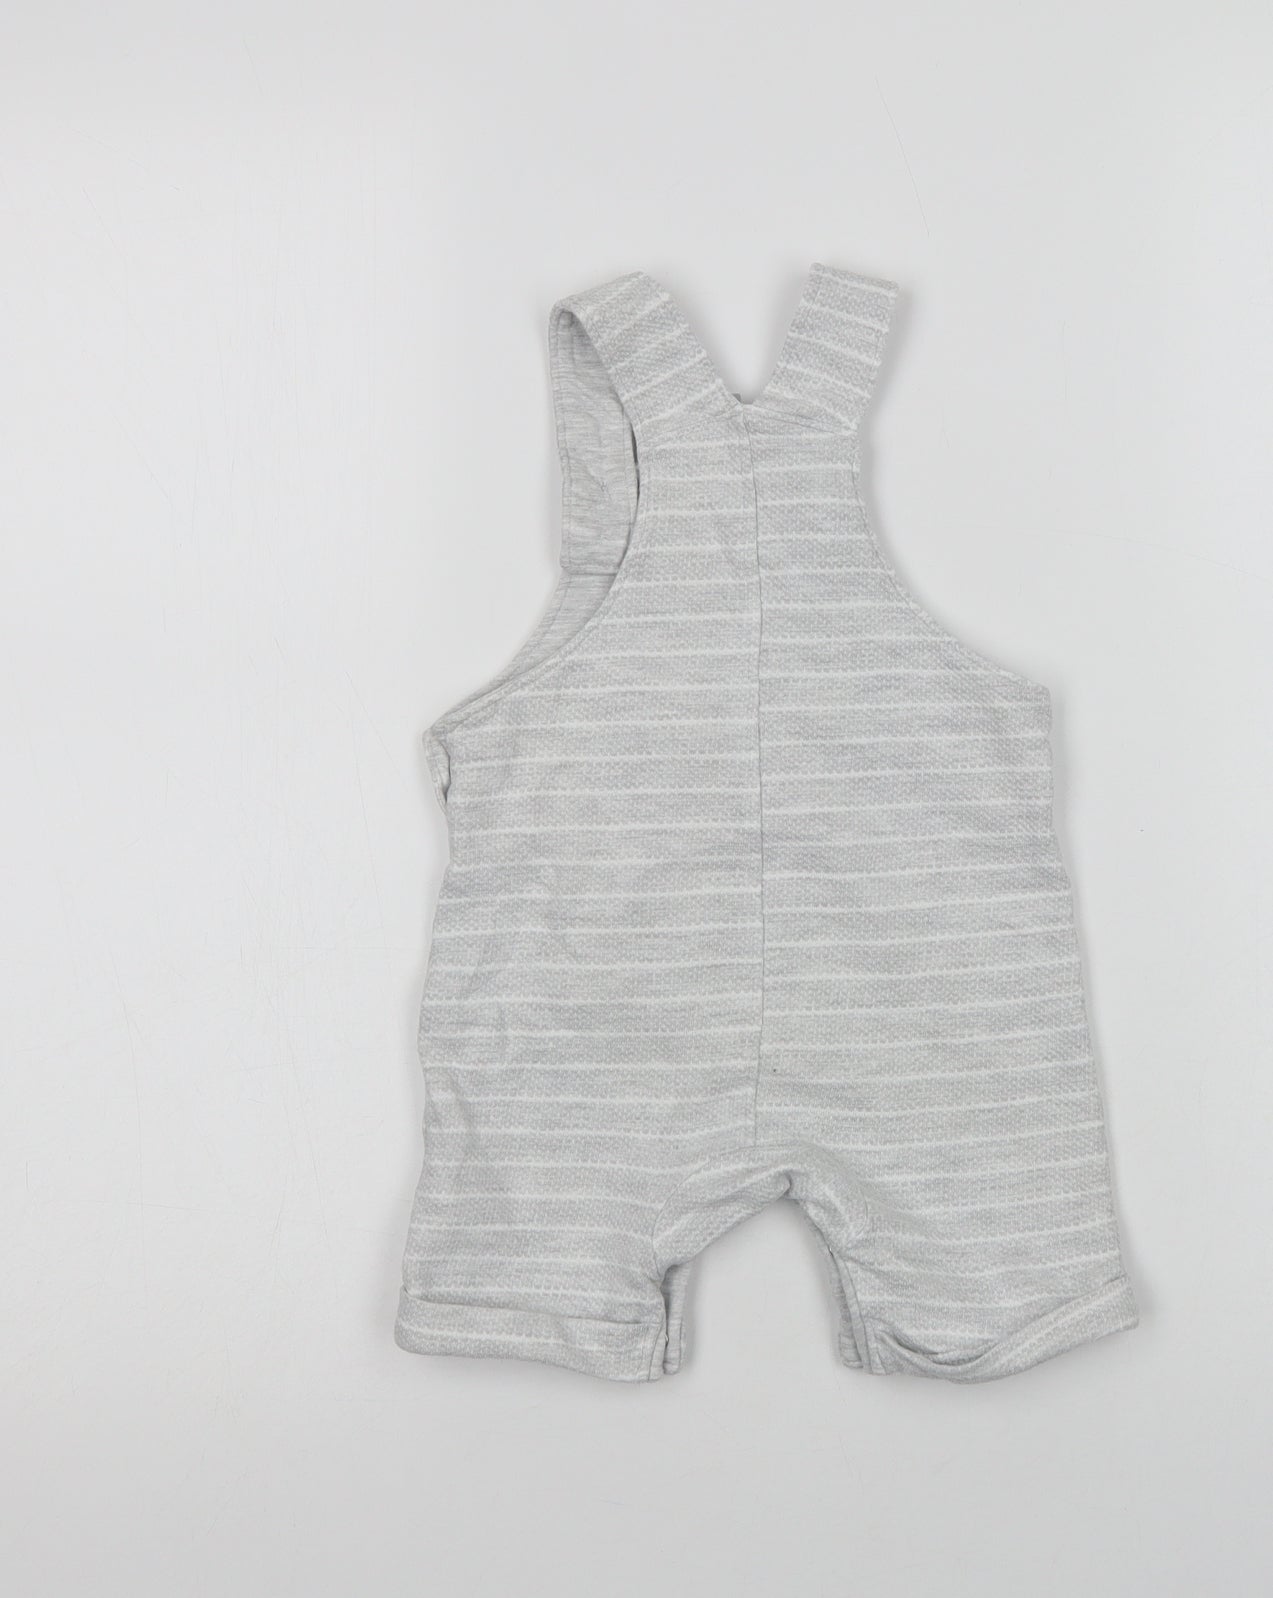 F&F Baby Grey Striped Cotton Romper One-Piece Size 12-18 Months  Button - Mr. Men